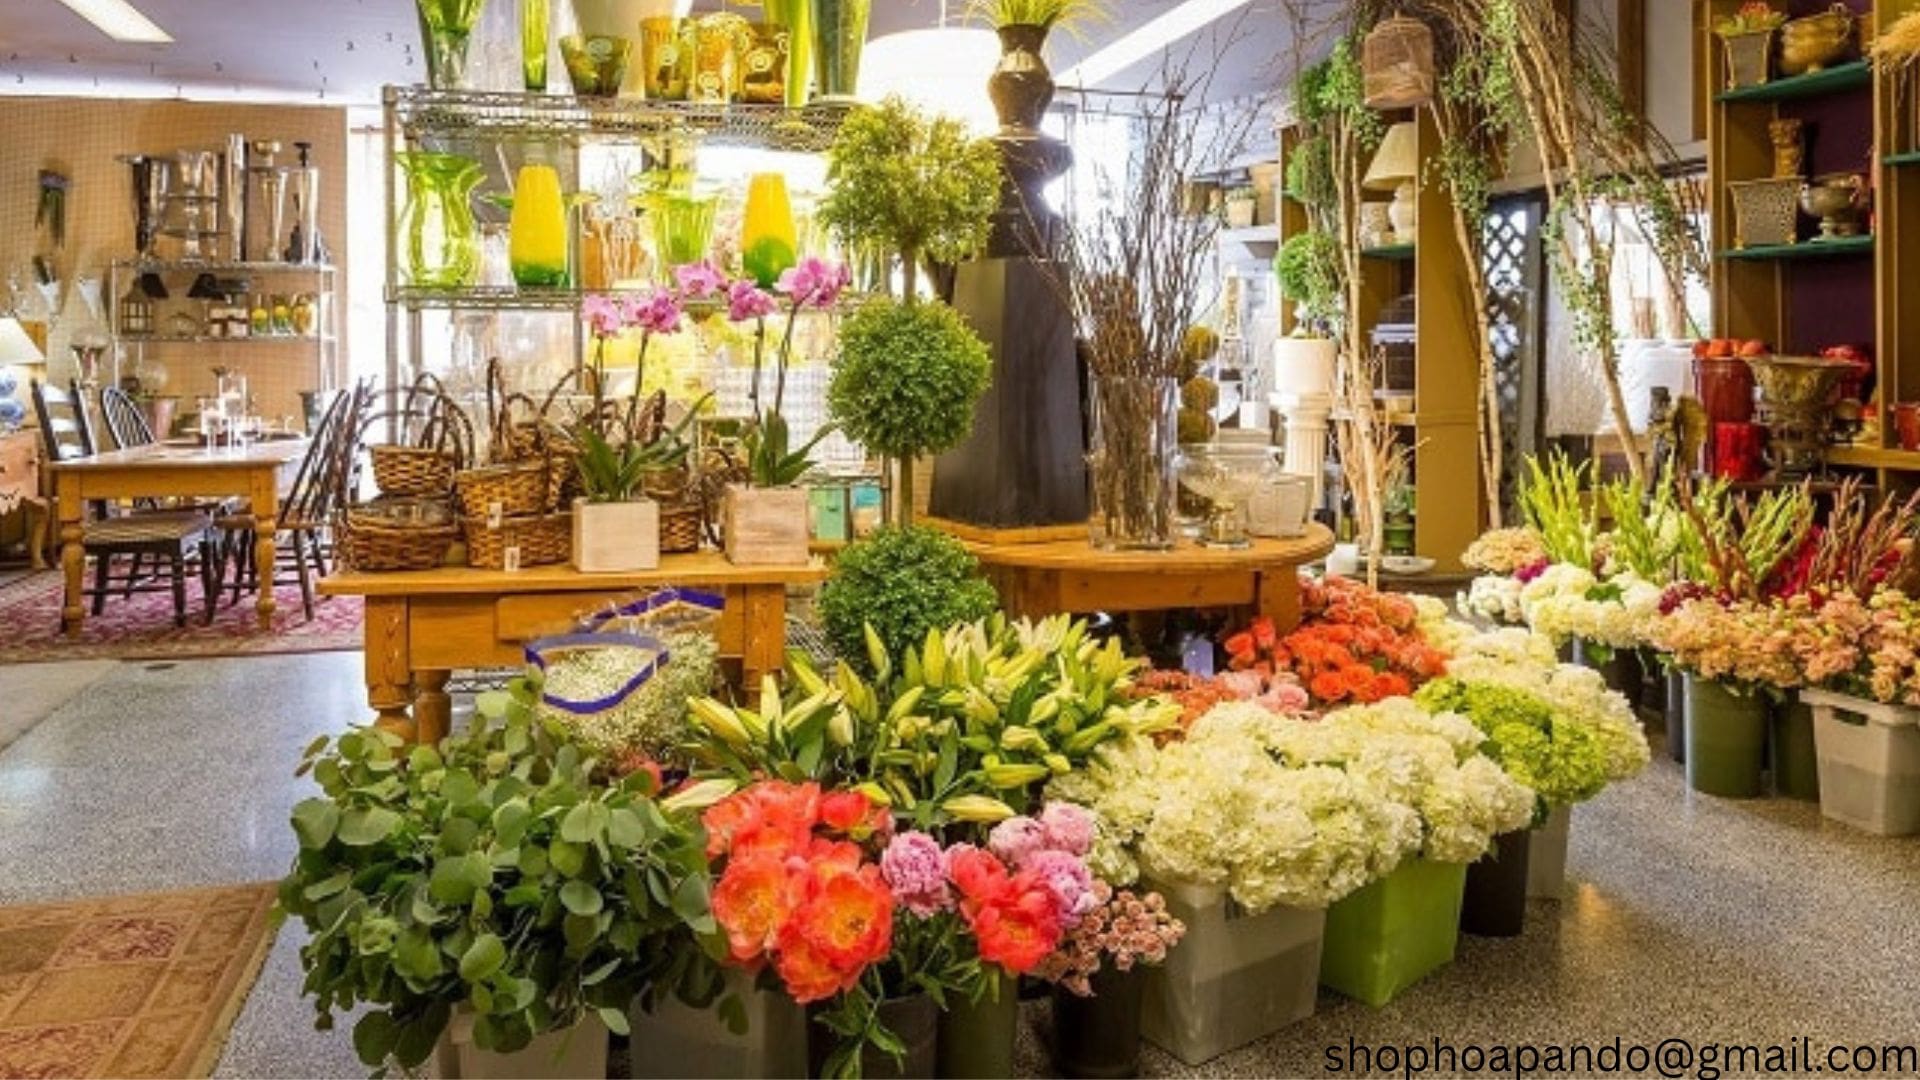 Cửa hàng hoa Pando - shop hoa tươi gần đây tại Đà Nẵng giá sinh viên